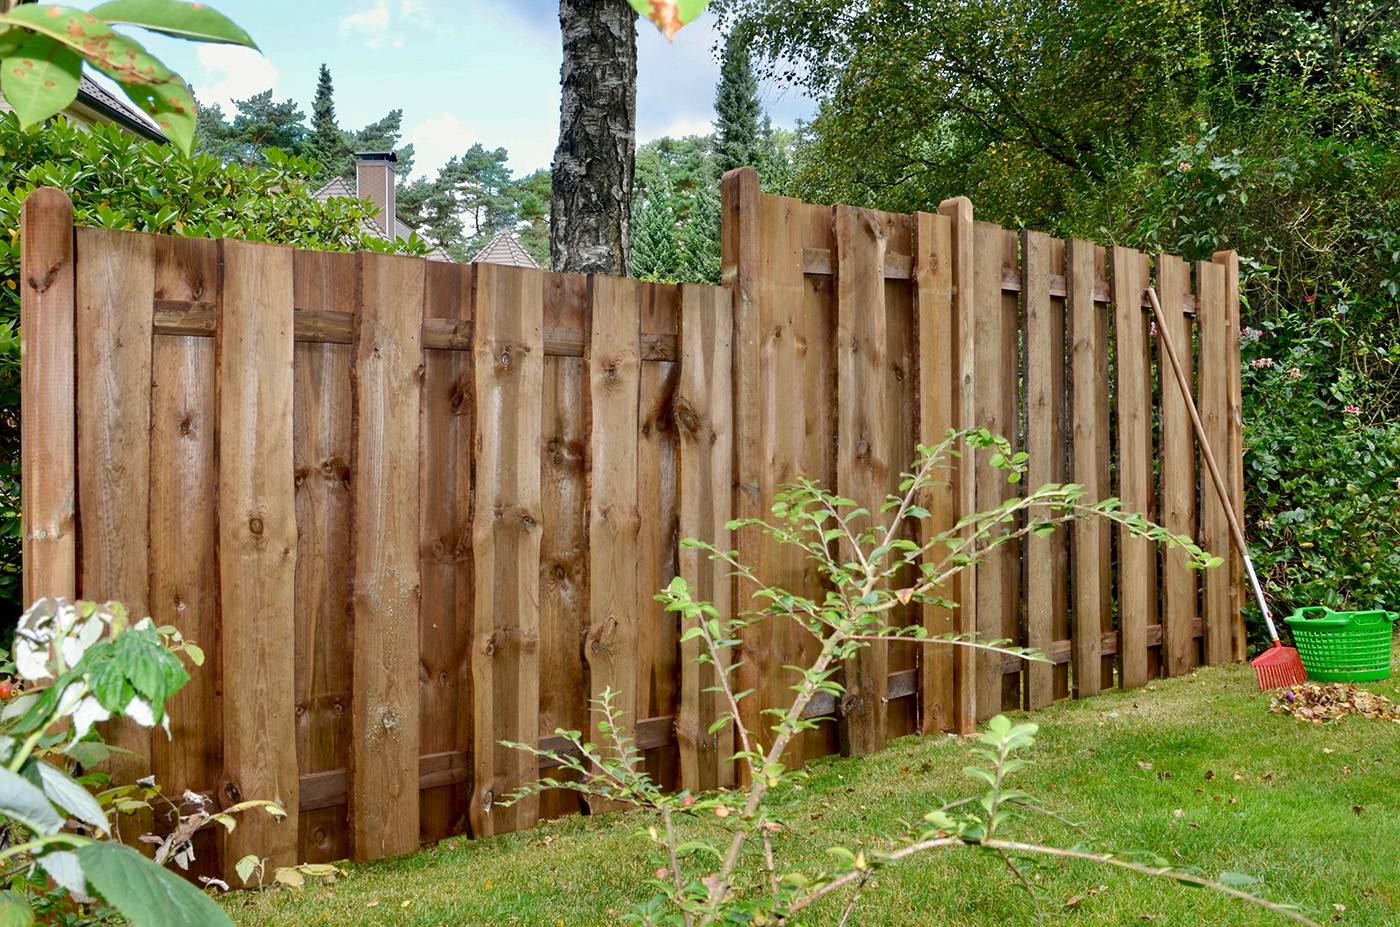 Забор из горбыля (52 фото): красивый деревянный забор из необрезной доски, все варианты обработки и дизайна – ремонт своими руками на m-stone.ru